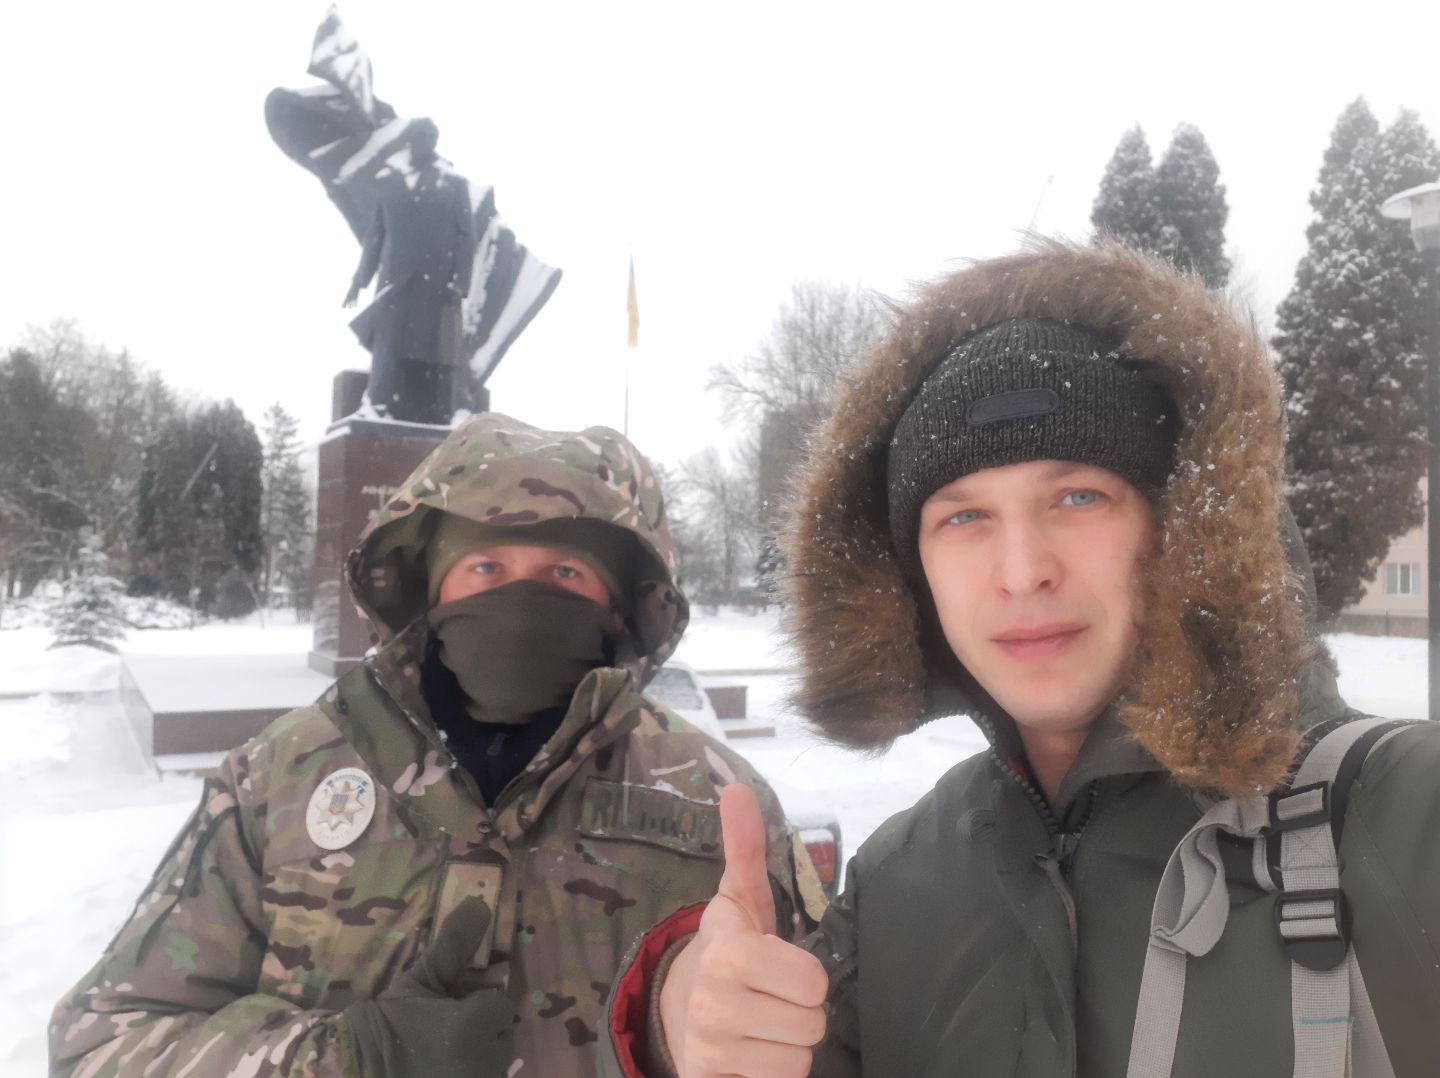 В Тернополе памятник Бандере взяли под круглосуточную охрану: "никто не испортит нам праздник!"